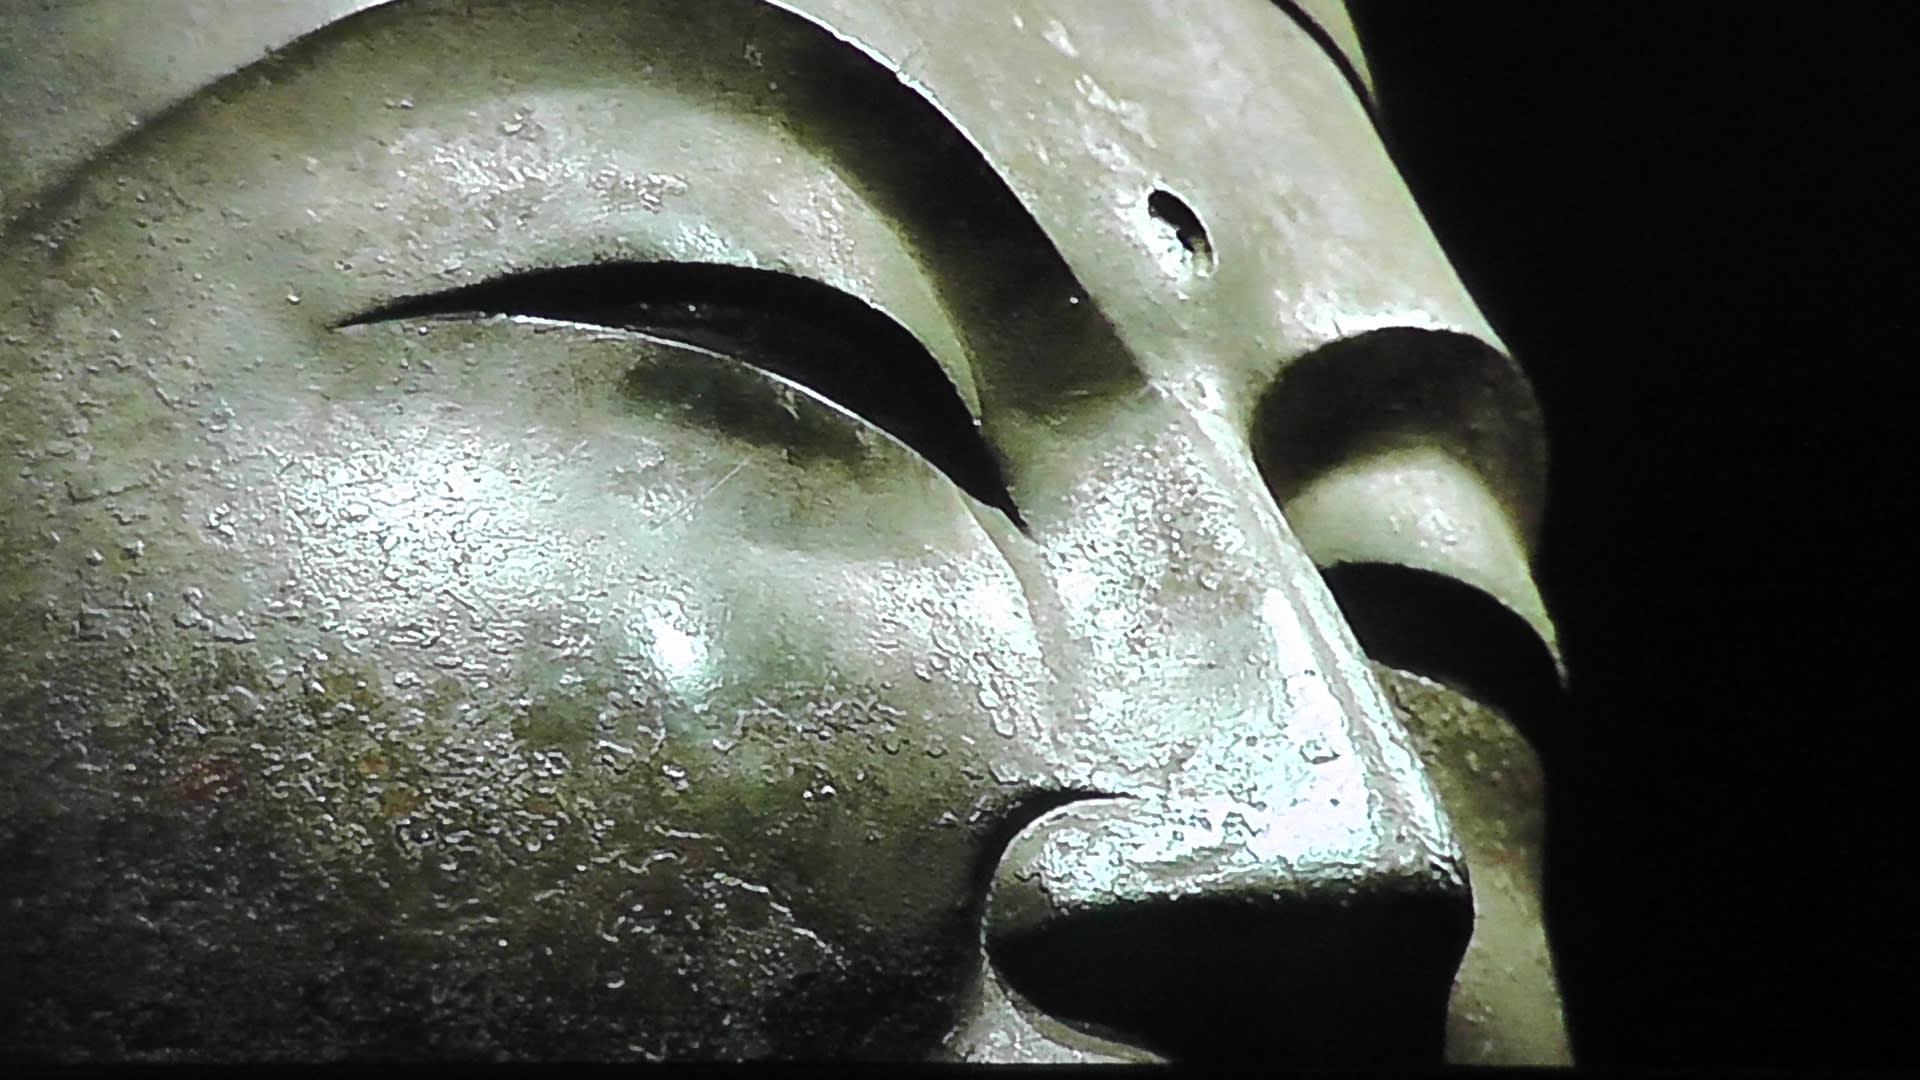 永遠に強く美しく奈良興福寺の国宝仏像 日曜美術館 京都で定年後生活